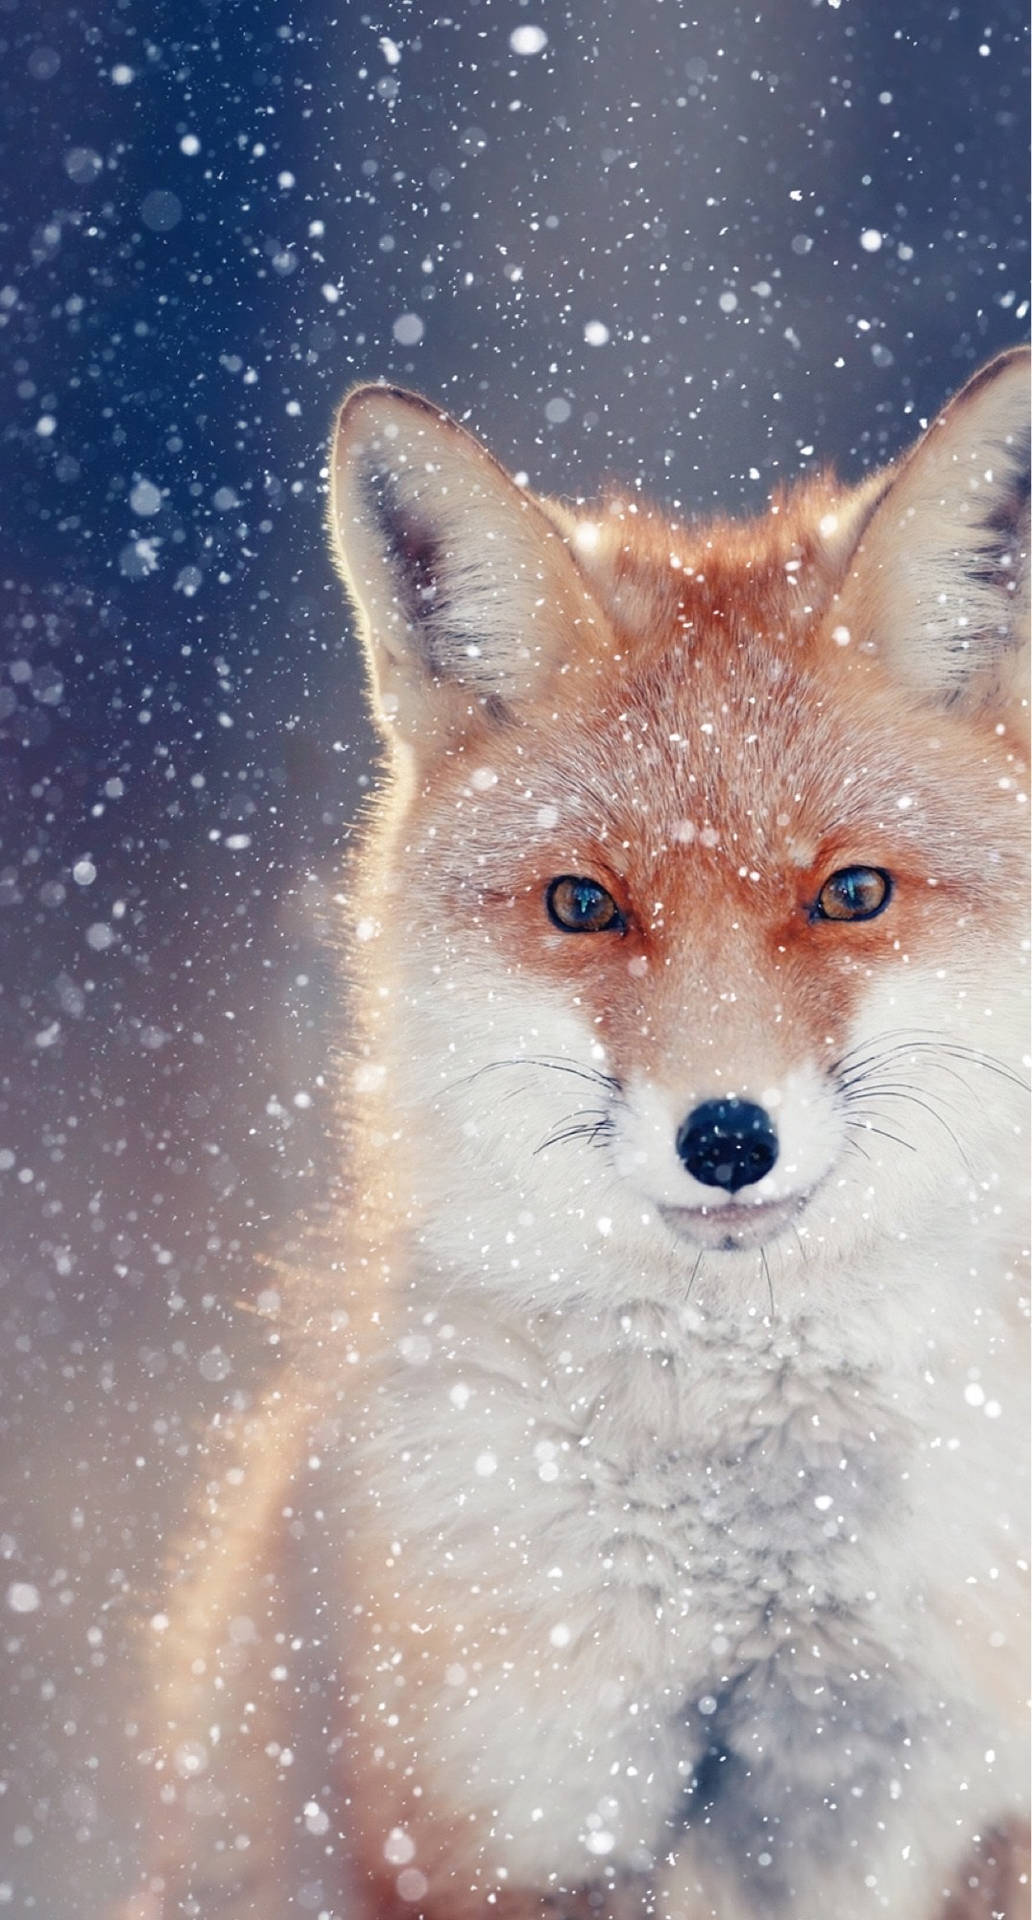 Cute fox in winter wallpaper